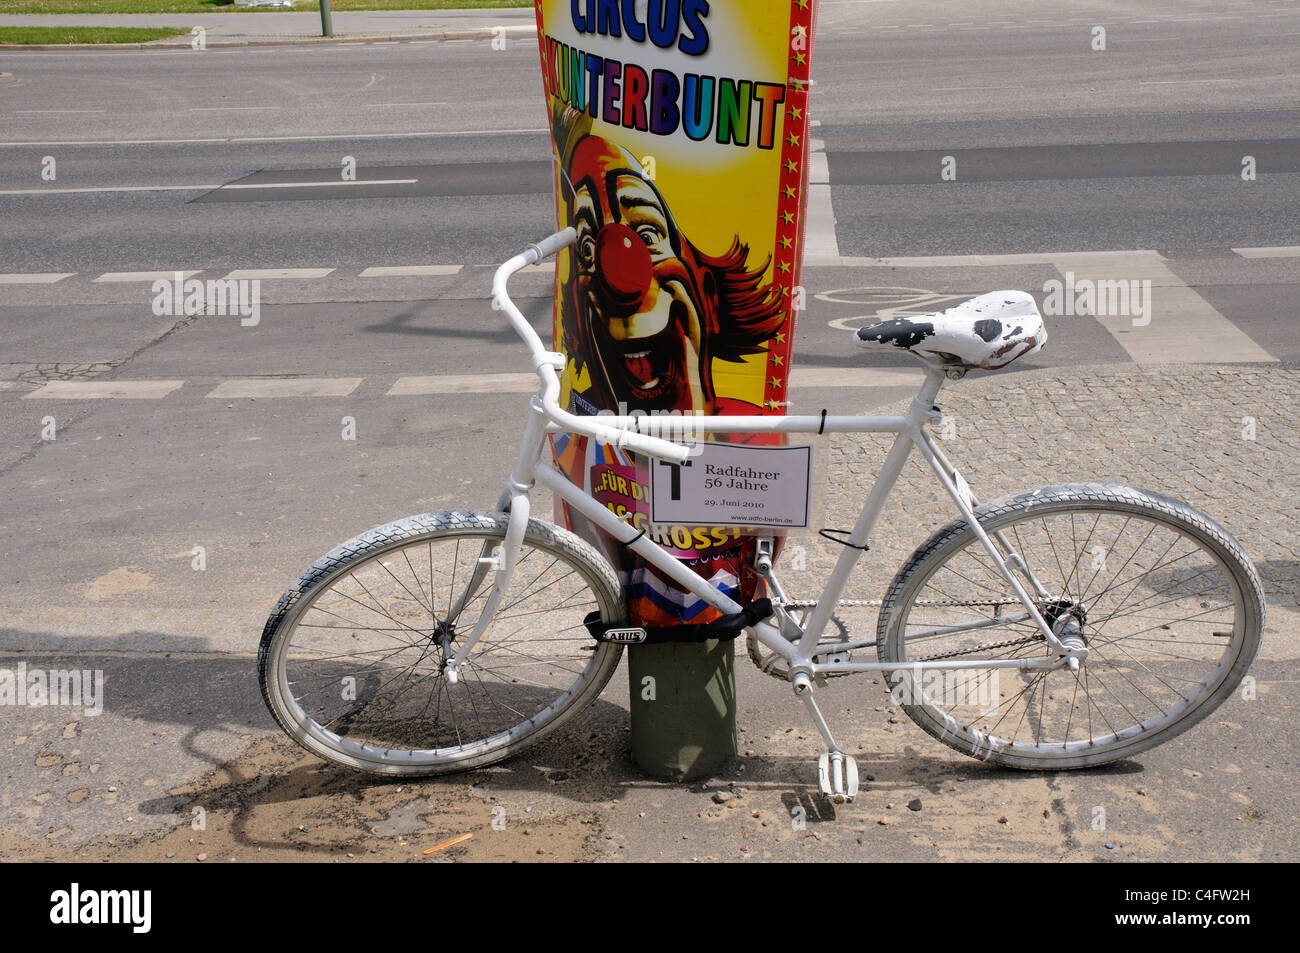 Un dipinto di bianco di bicicletta per contrassegnare il punto in cui un ciclista morto a Berlino Foto Stock